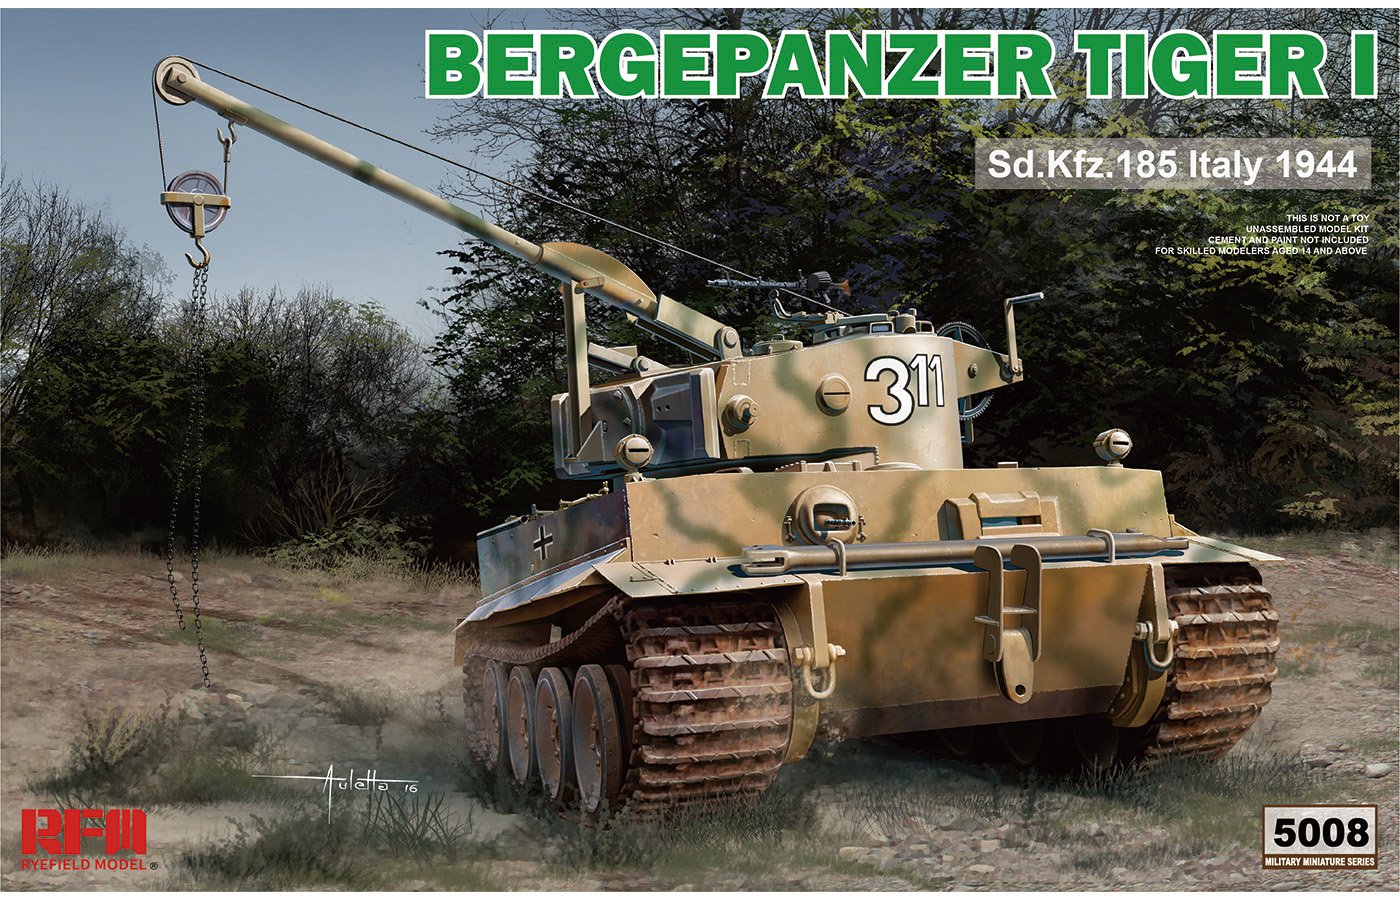 1/35 Bergepanzer Tiger I, Sd.Kfz.185, Italy 1944 - Click Image to Close